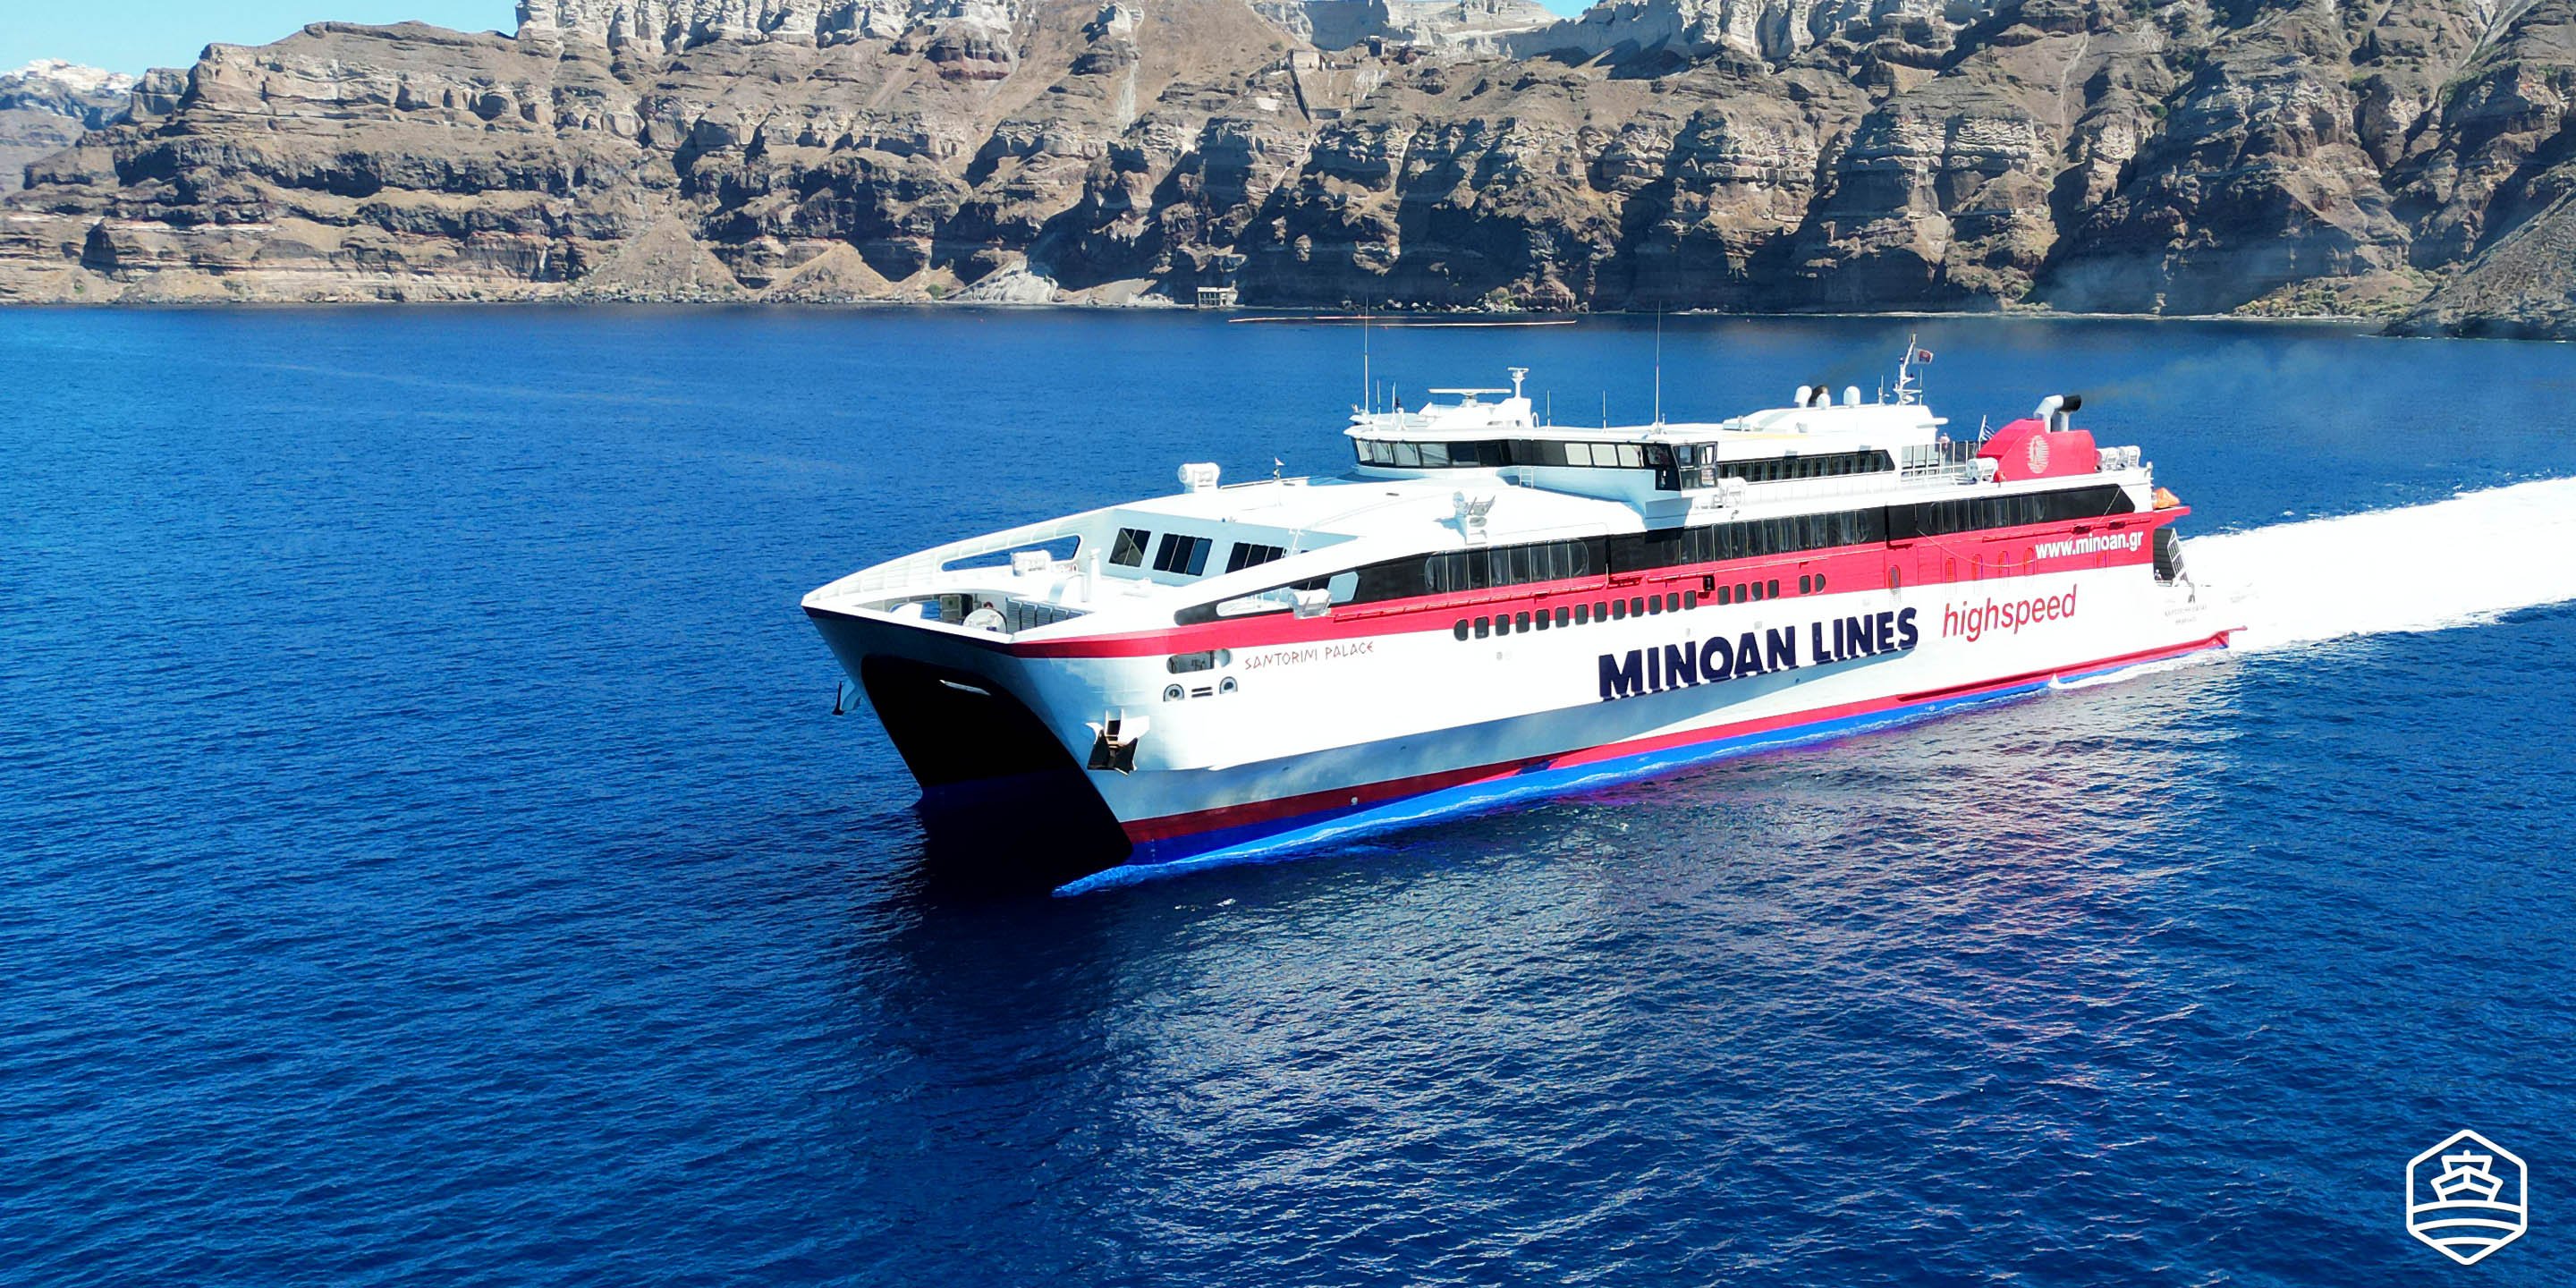 Le ferry à grande vitesse Santorini Palace of Minoan Lines assure la liaison entre Santorin et la Crète (Héraklion)